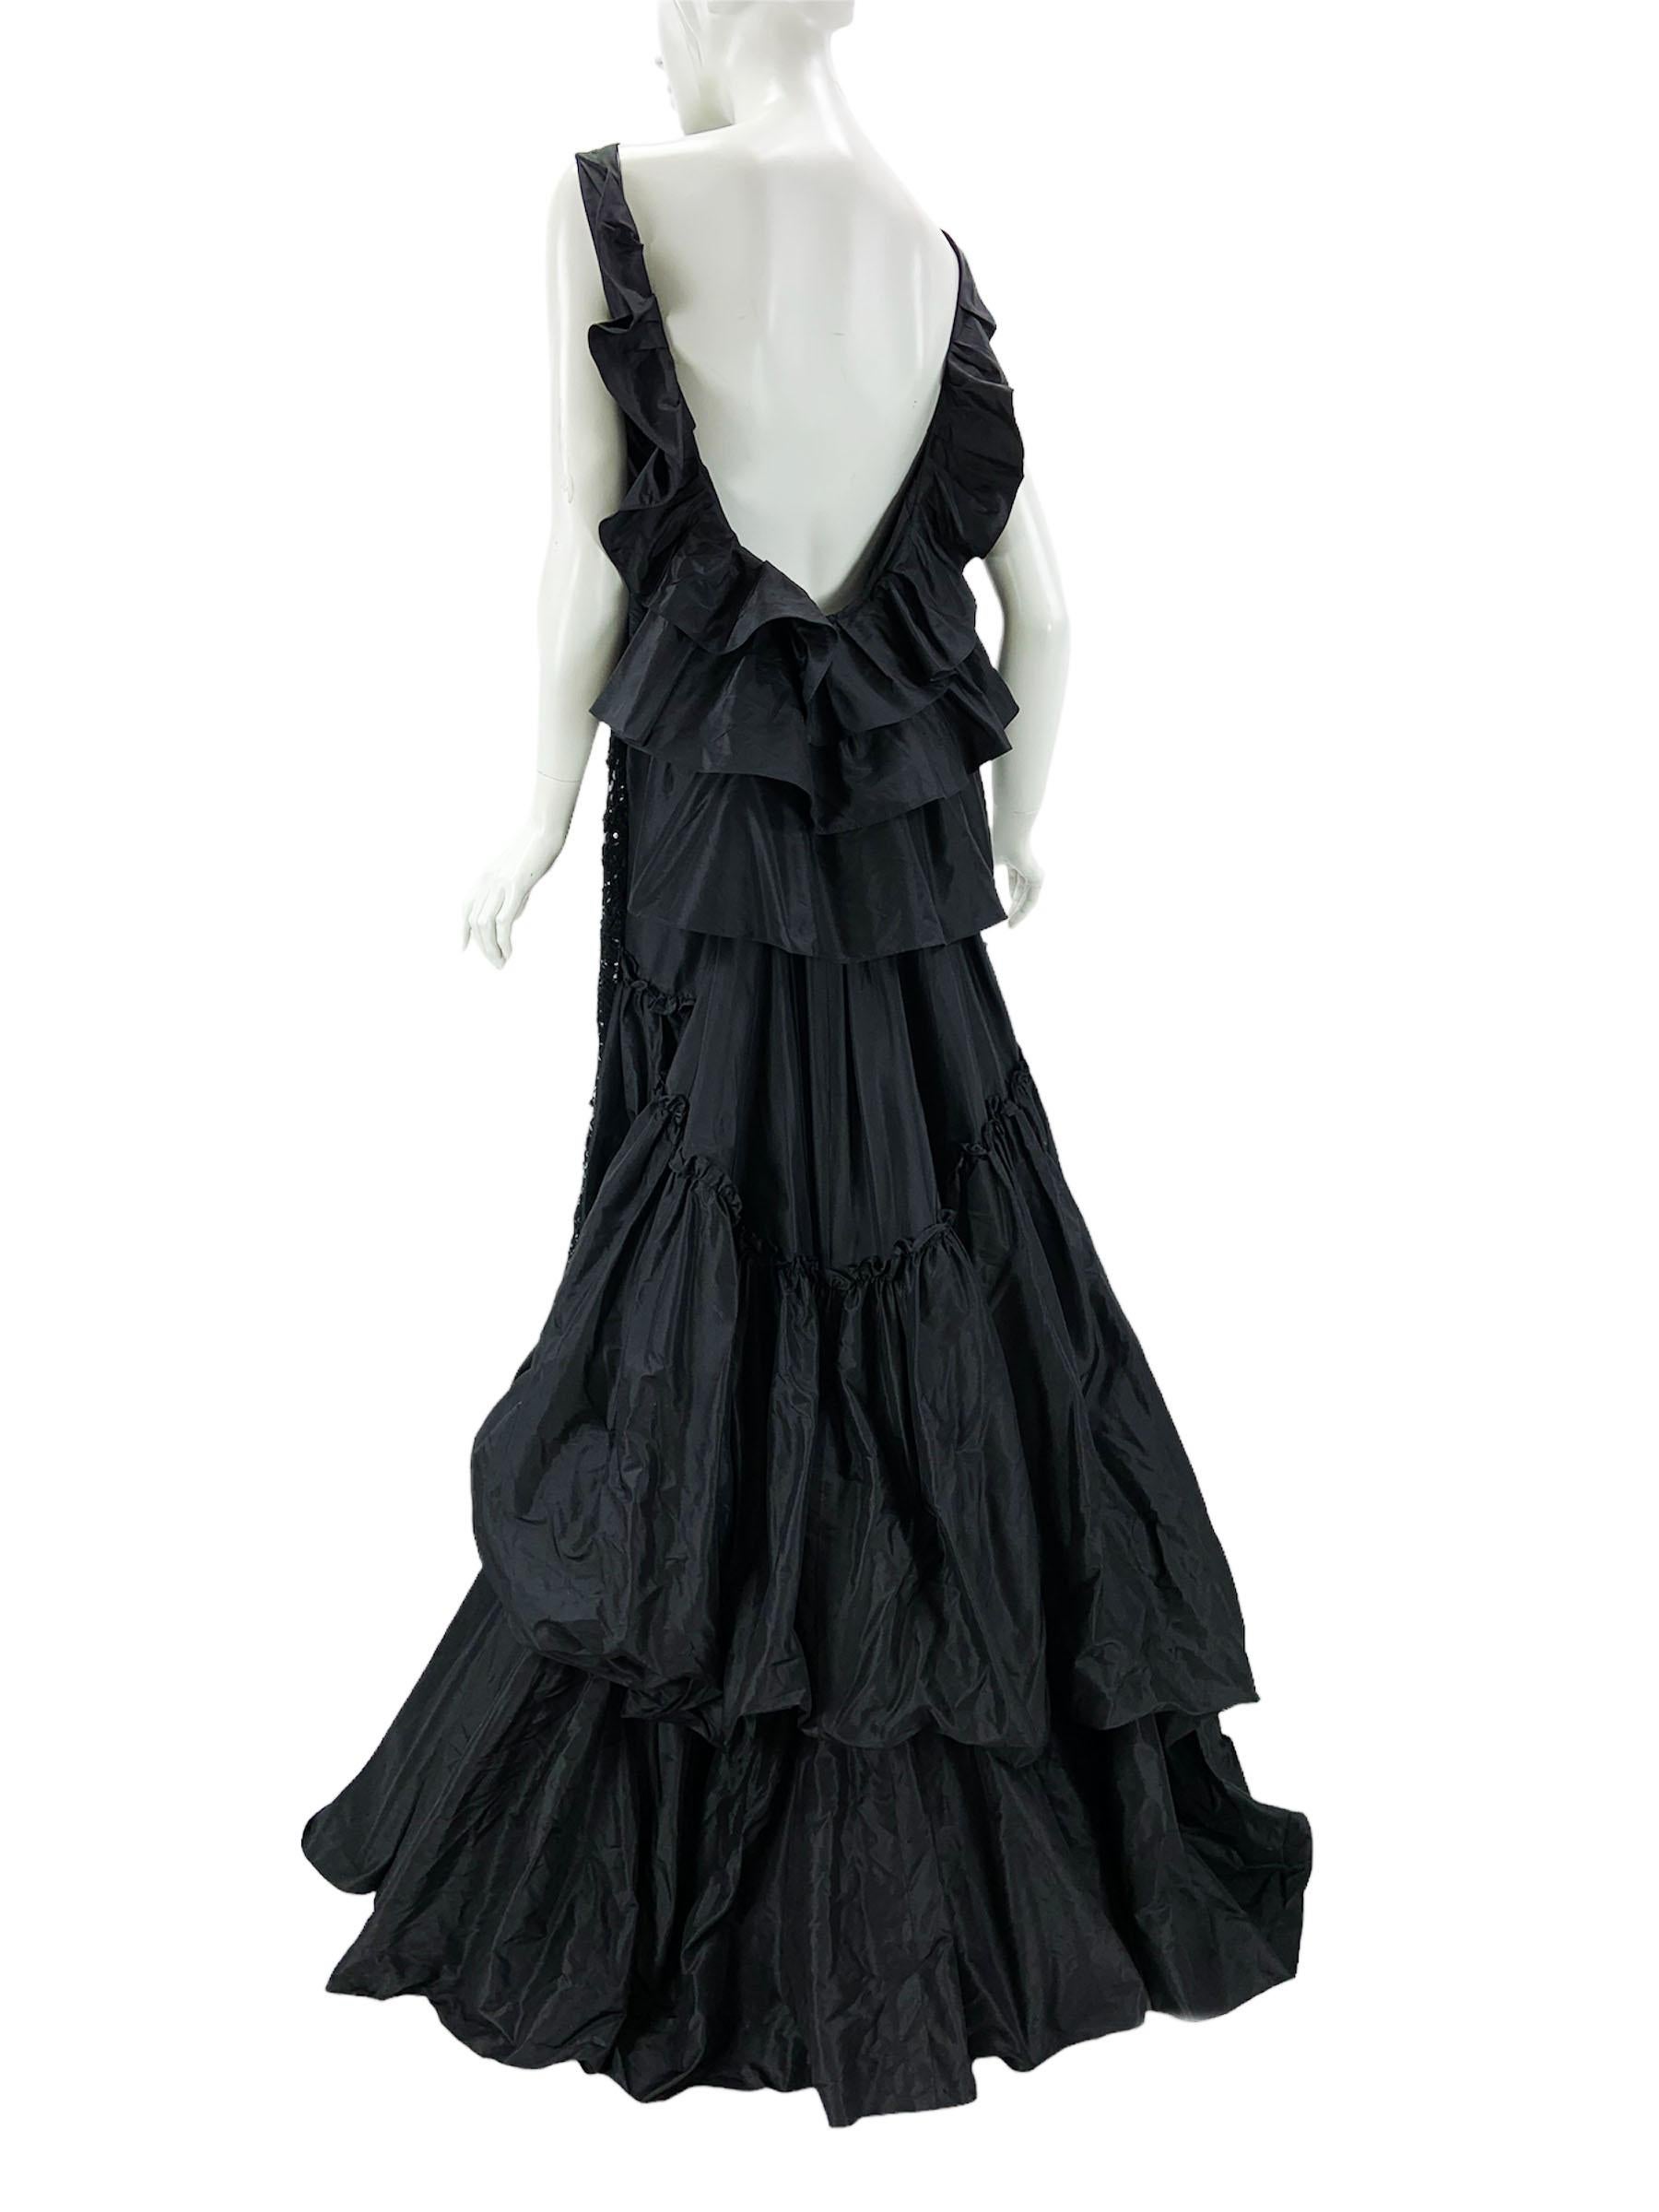 Women's Oscar de la Renta Black Embellished Lace Taffeta Silk Gown Dress US 6 For Sale